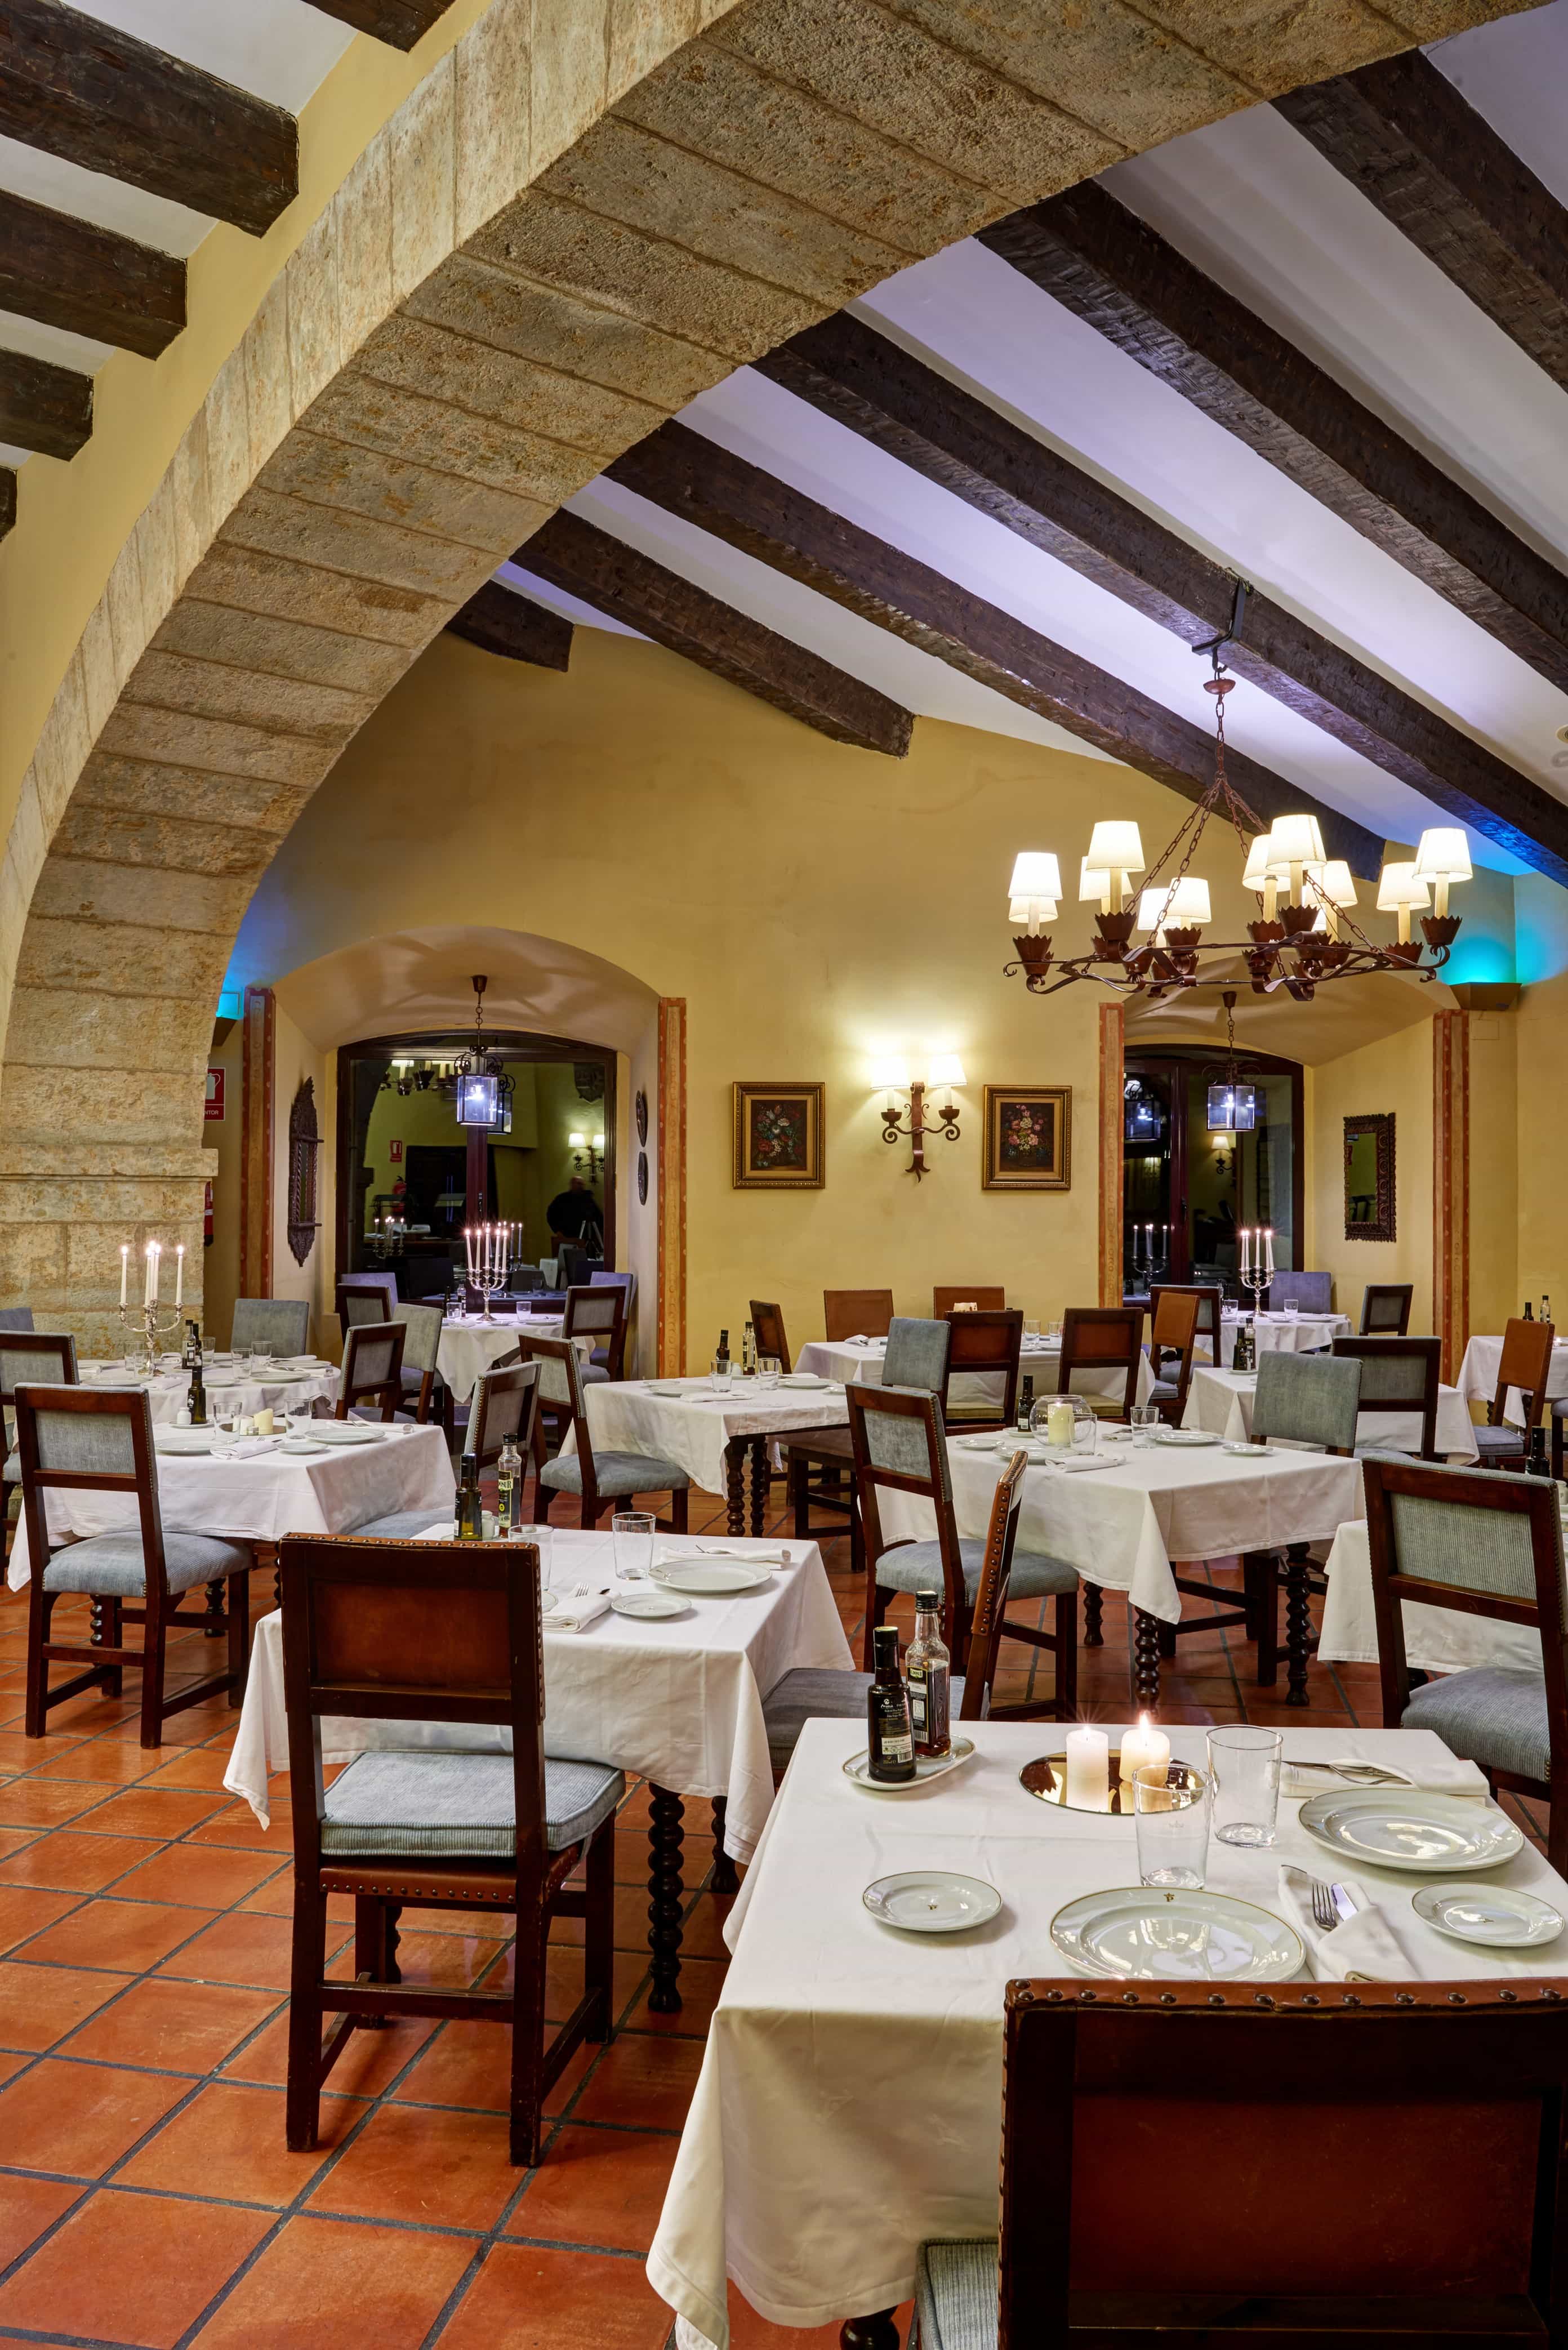 Comedor interior con arcos de piedra del Restaurante del Parador de Ciudad Rodrigo